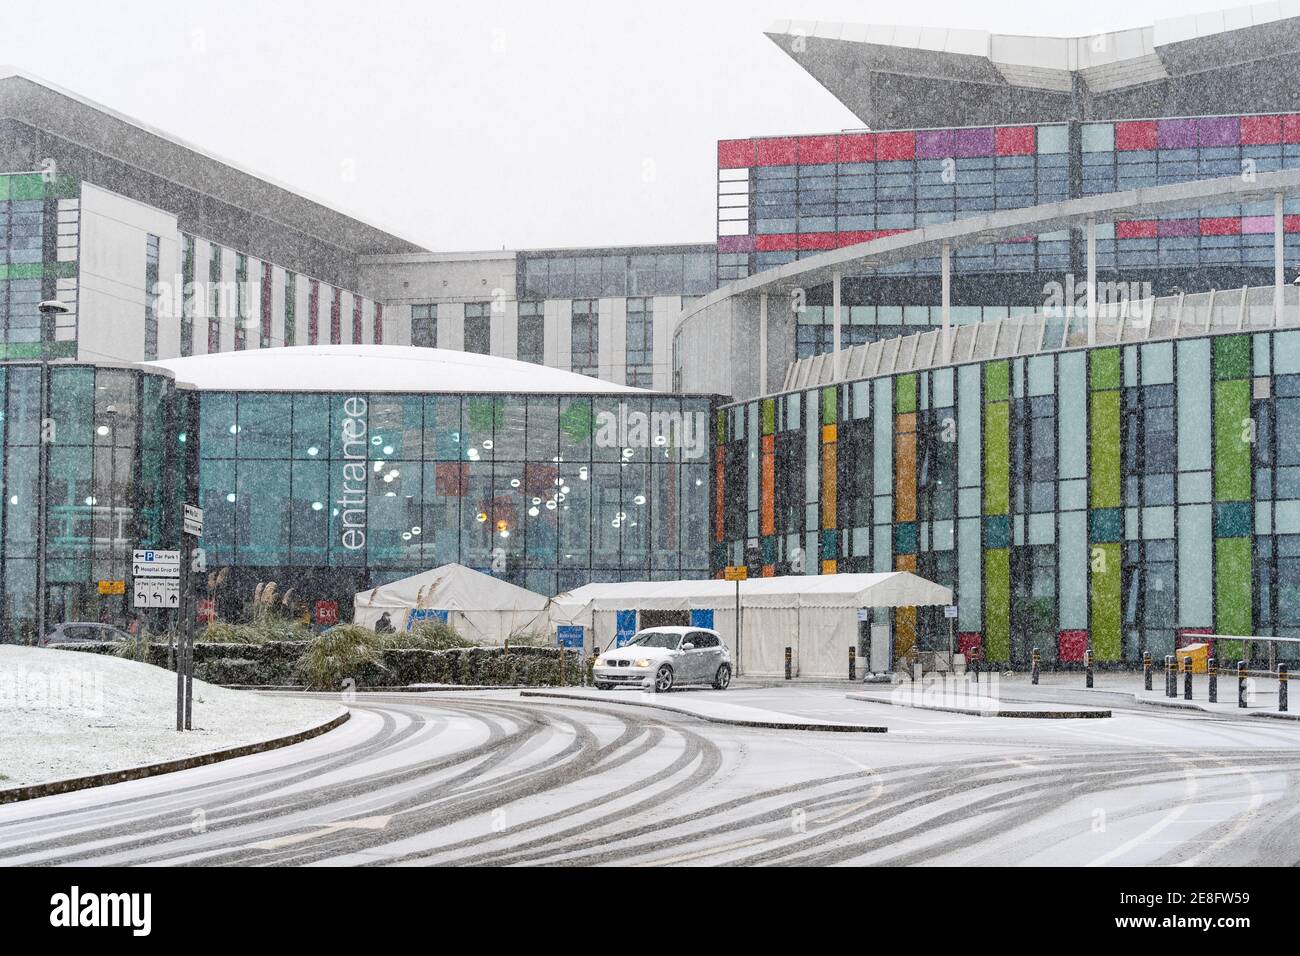 Kings Mill ospedale neve pesante caduta nevicare grave tempo mettendo Moderno centro di pronto soccorso NHS sotto pressione durante l'inverno pandemia Foto Stock